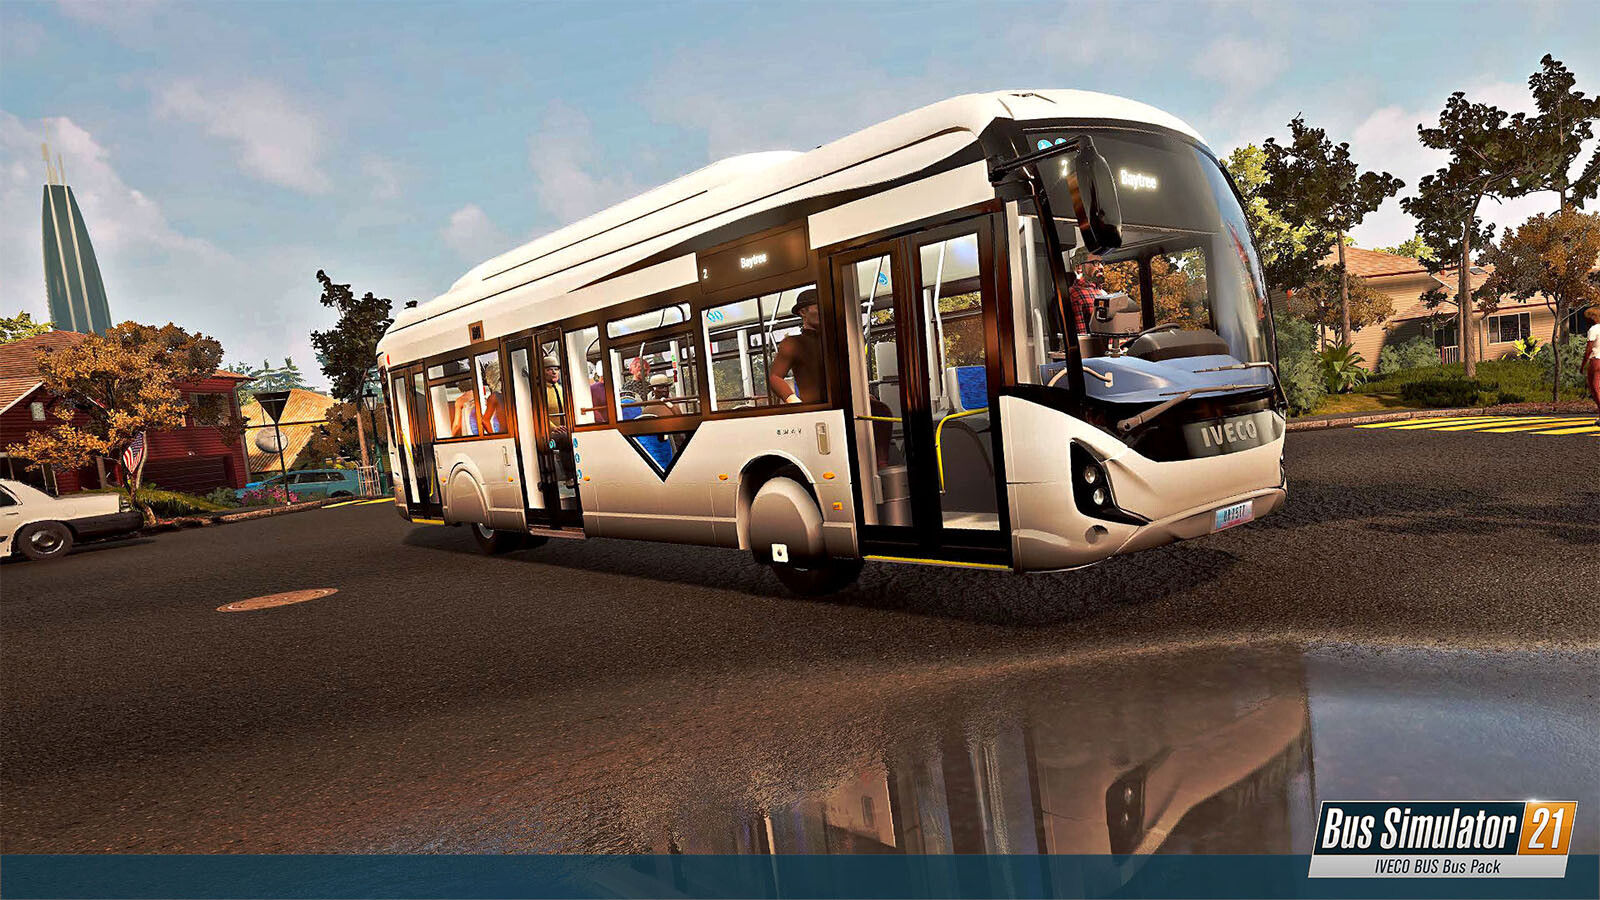 Bus Simulator 21 – IVECO BUS Bus Pack